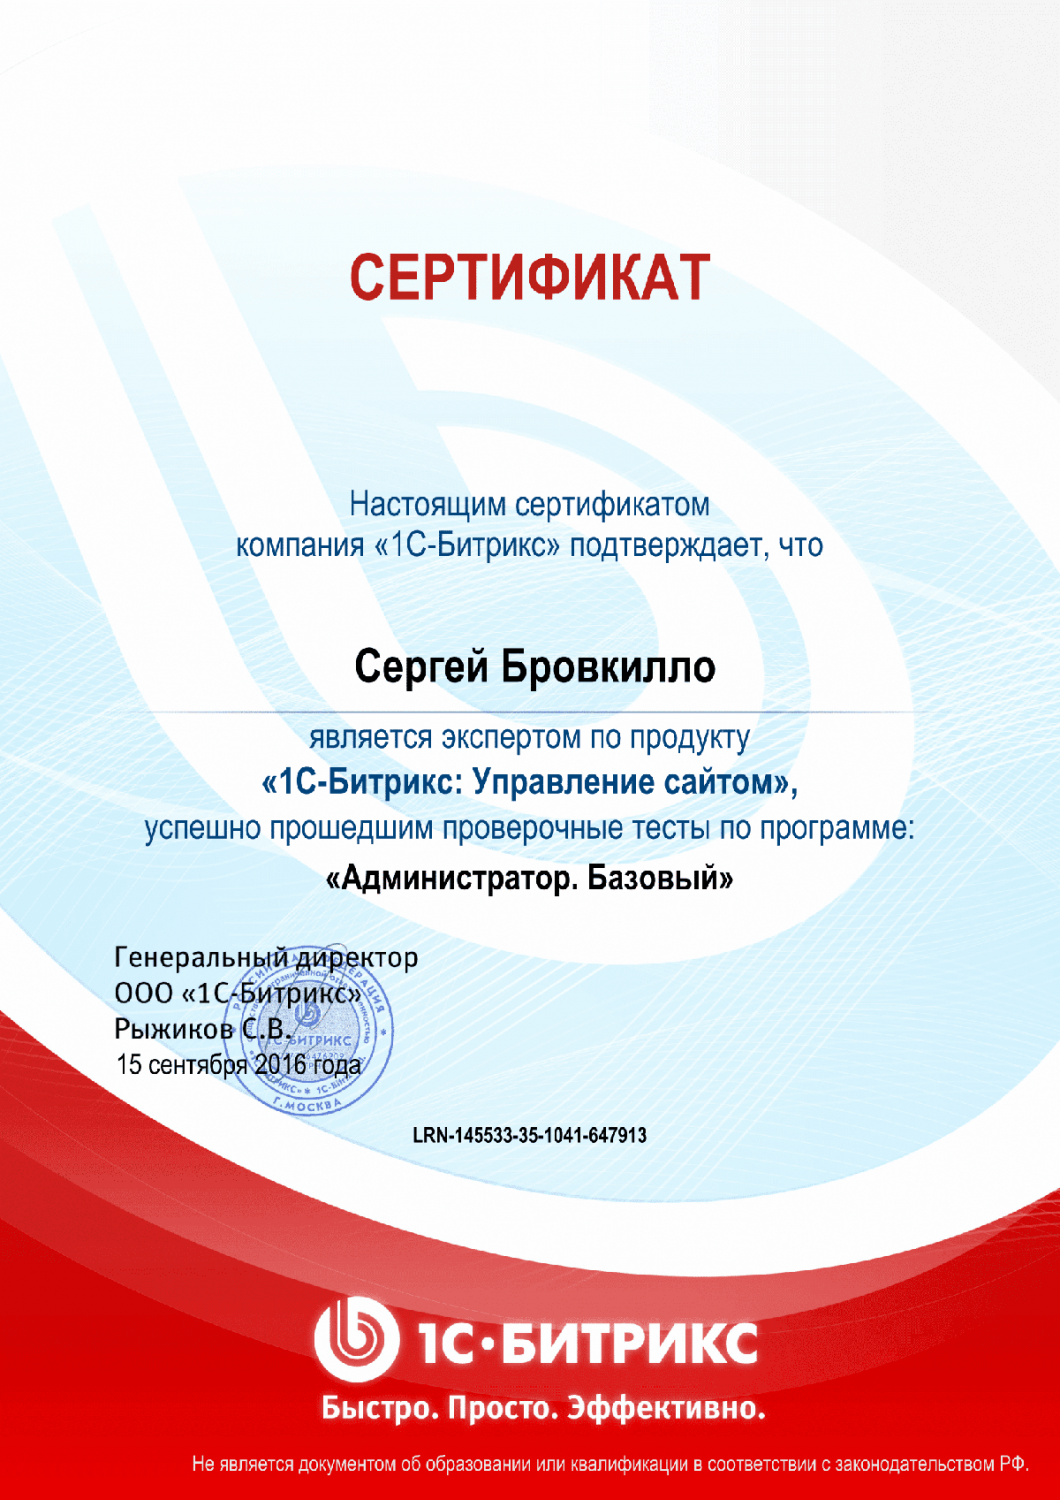 Сертификат эксперта по программе "Администратор. Базовый" в Хабаровска